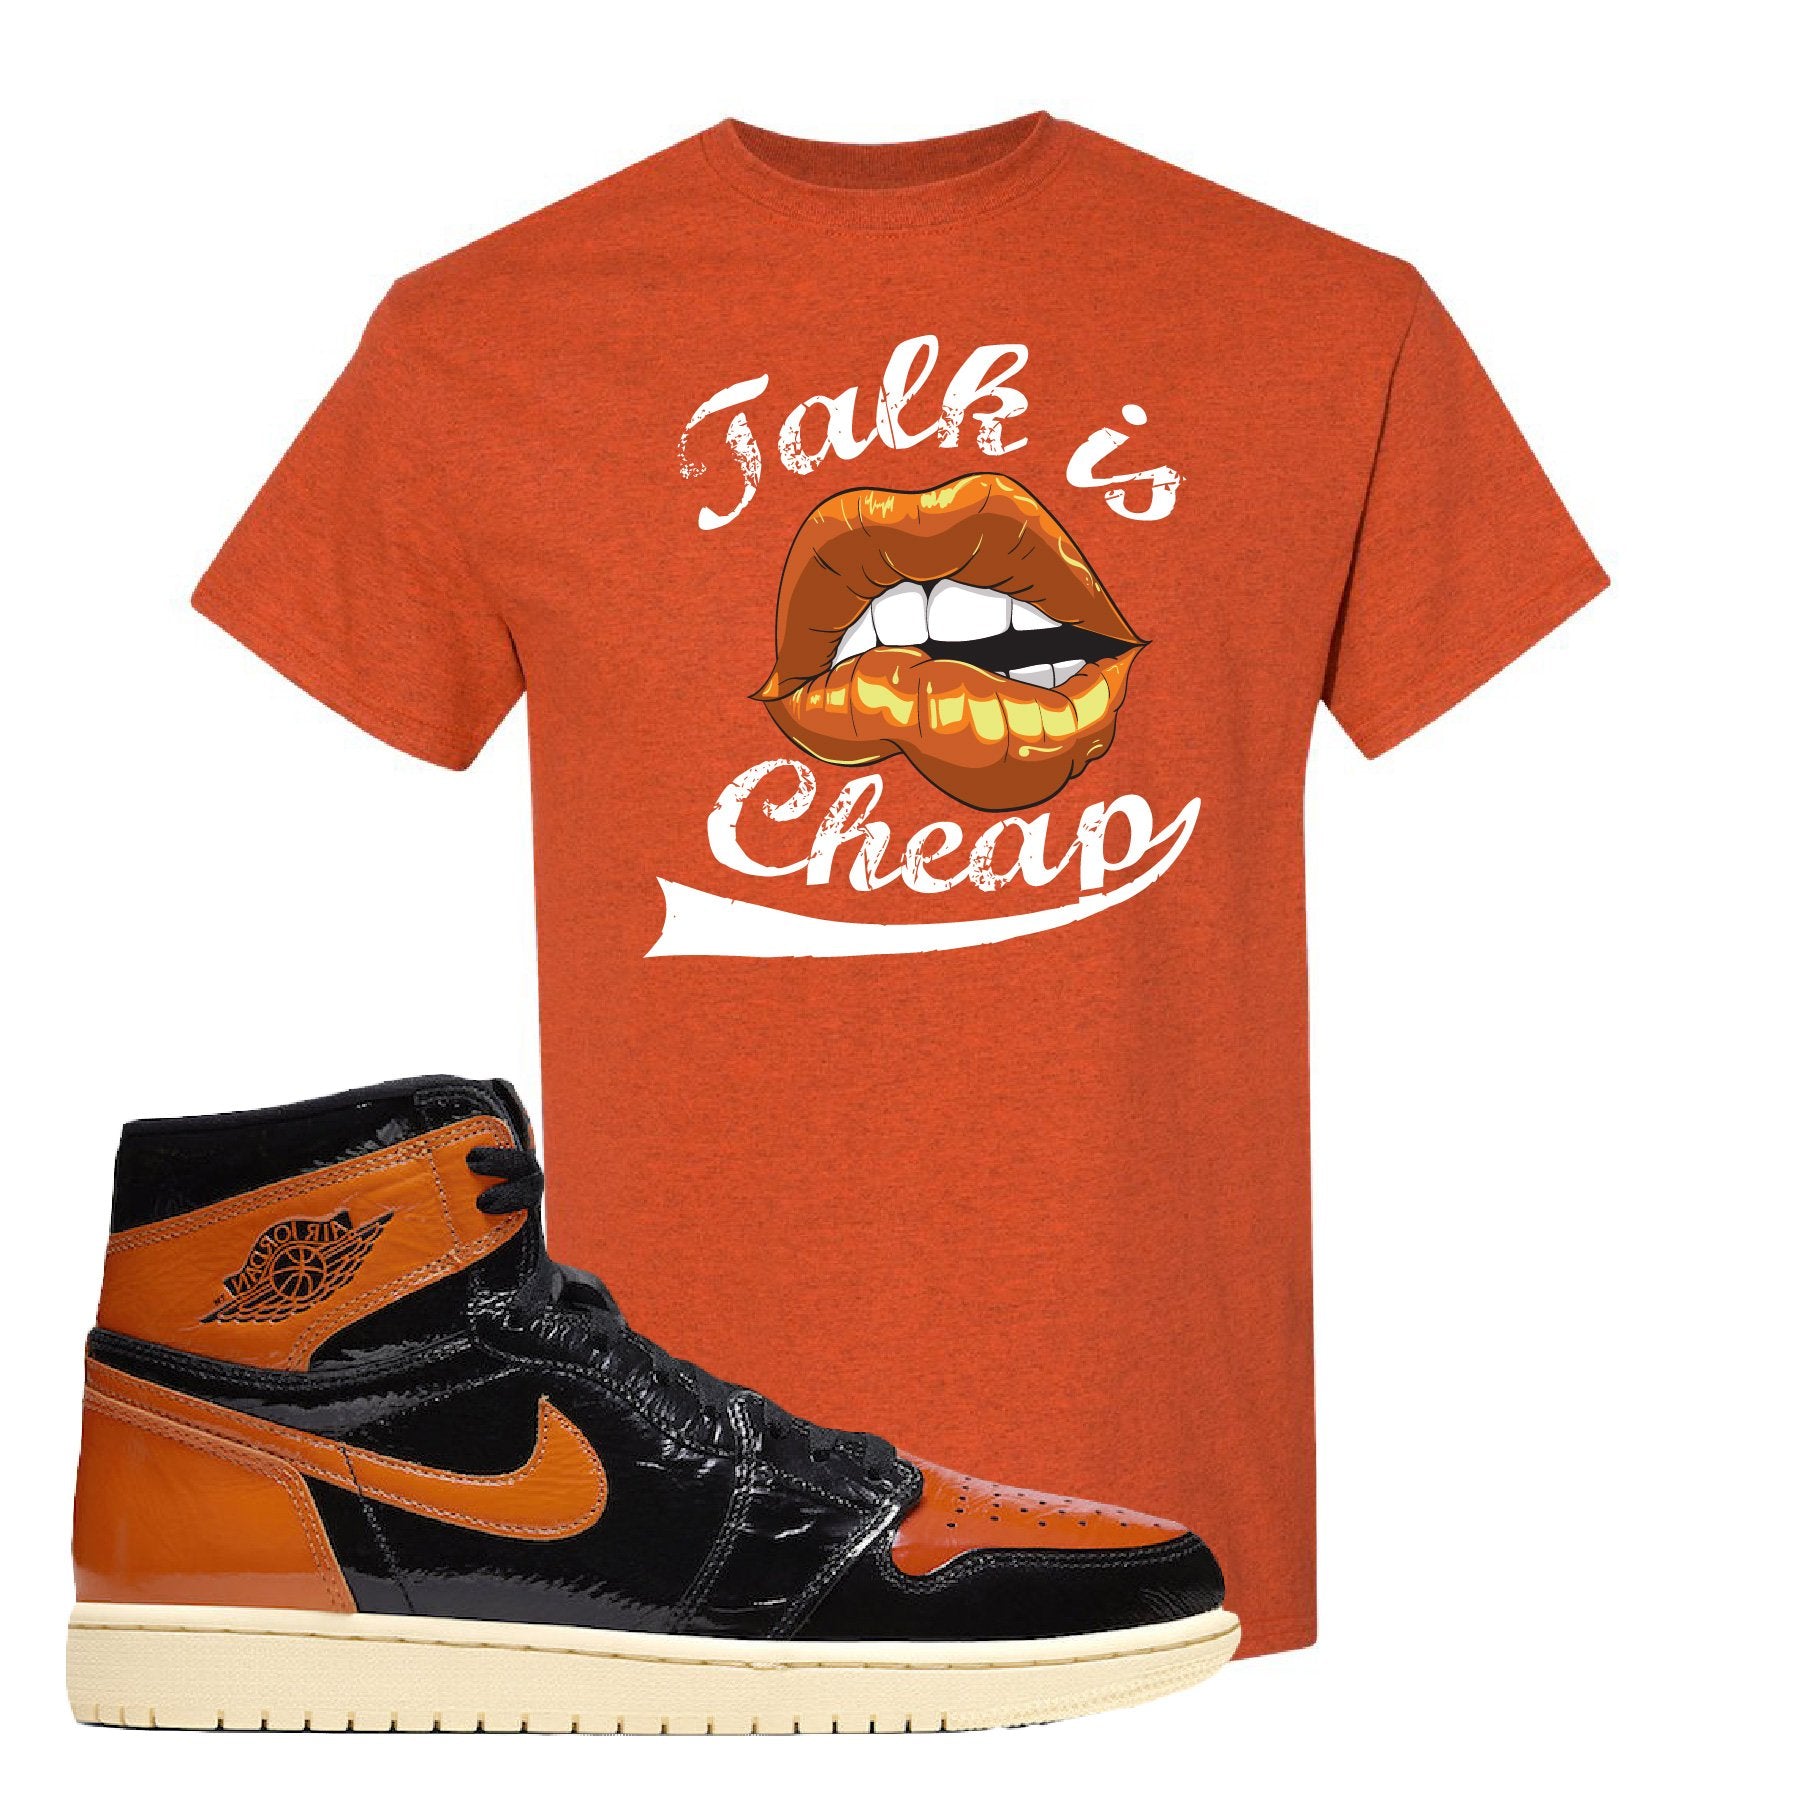 Jordan 1 Shattered Backboard Talk Is Cheap Antique Orange Sneaker Hook Up T-Shirt